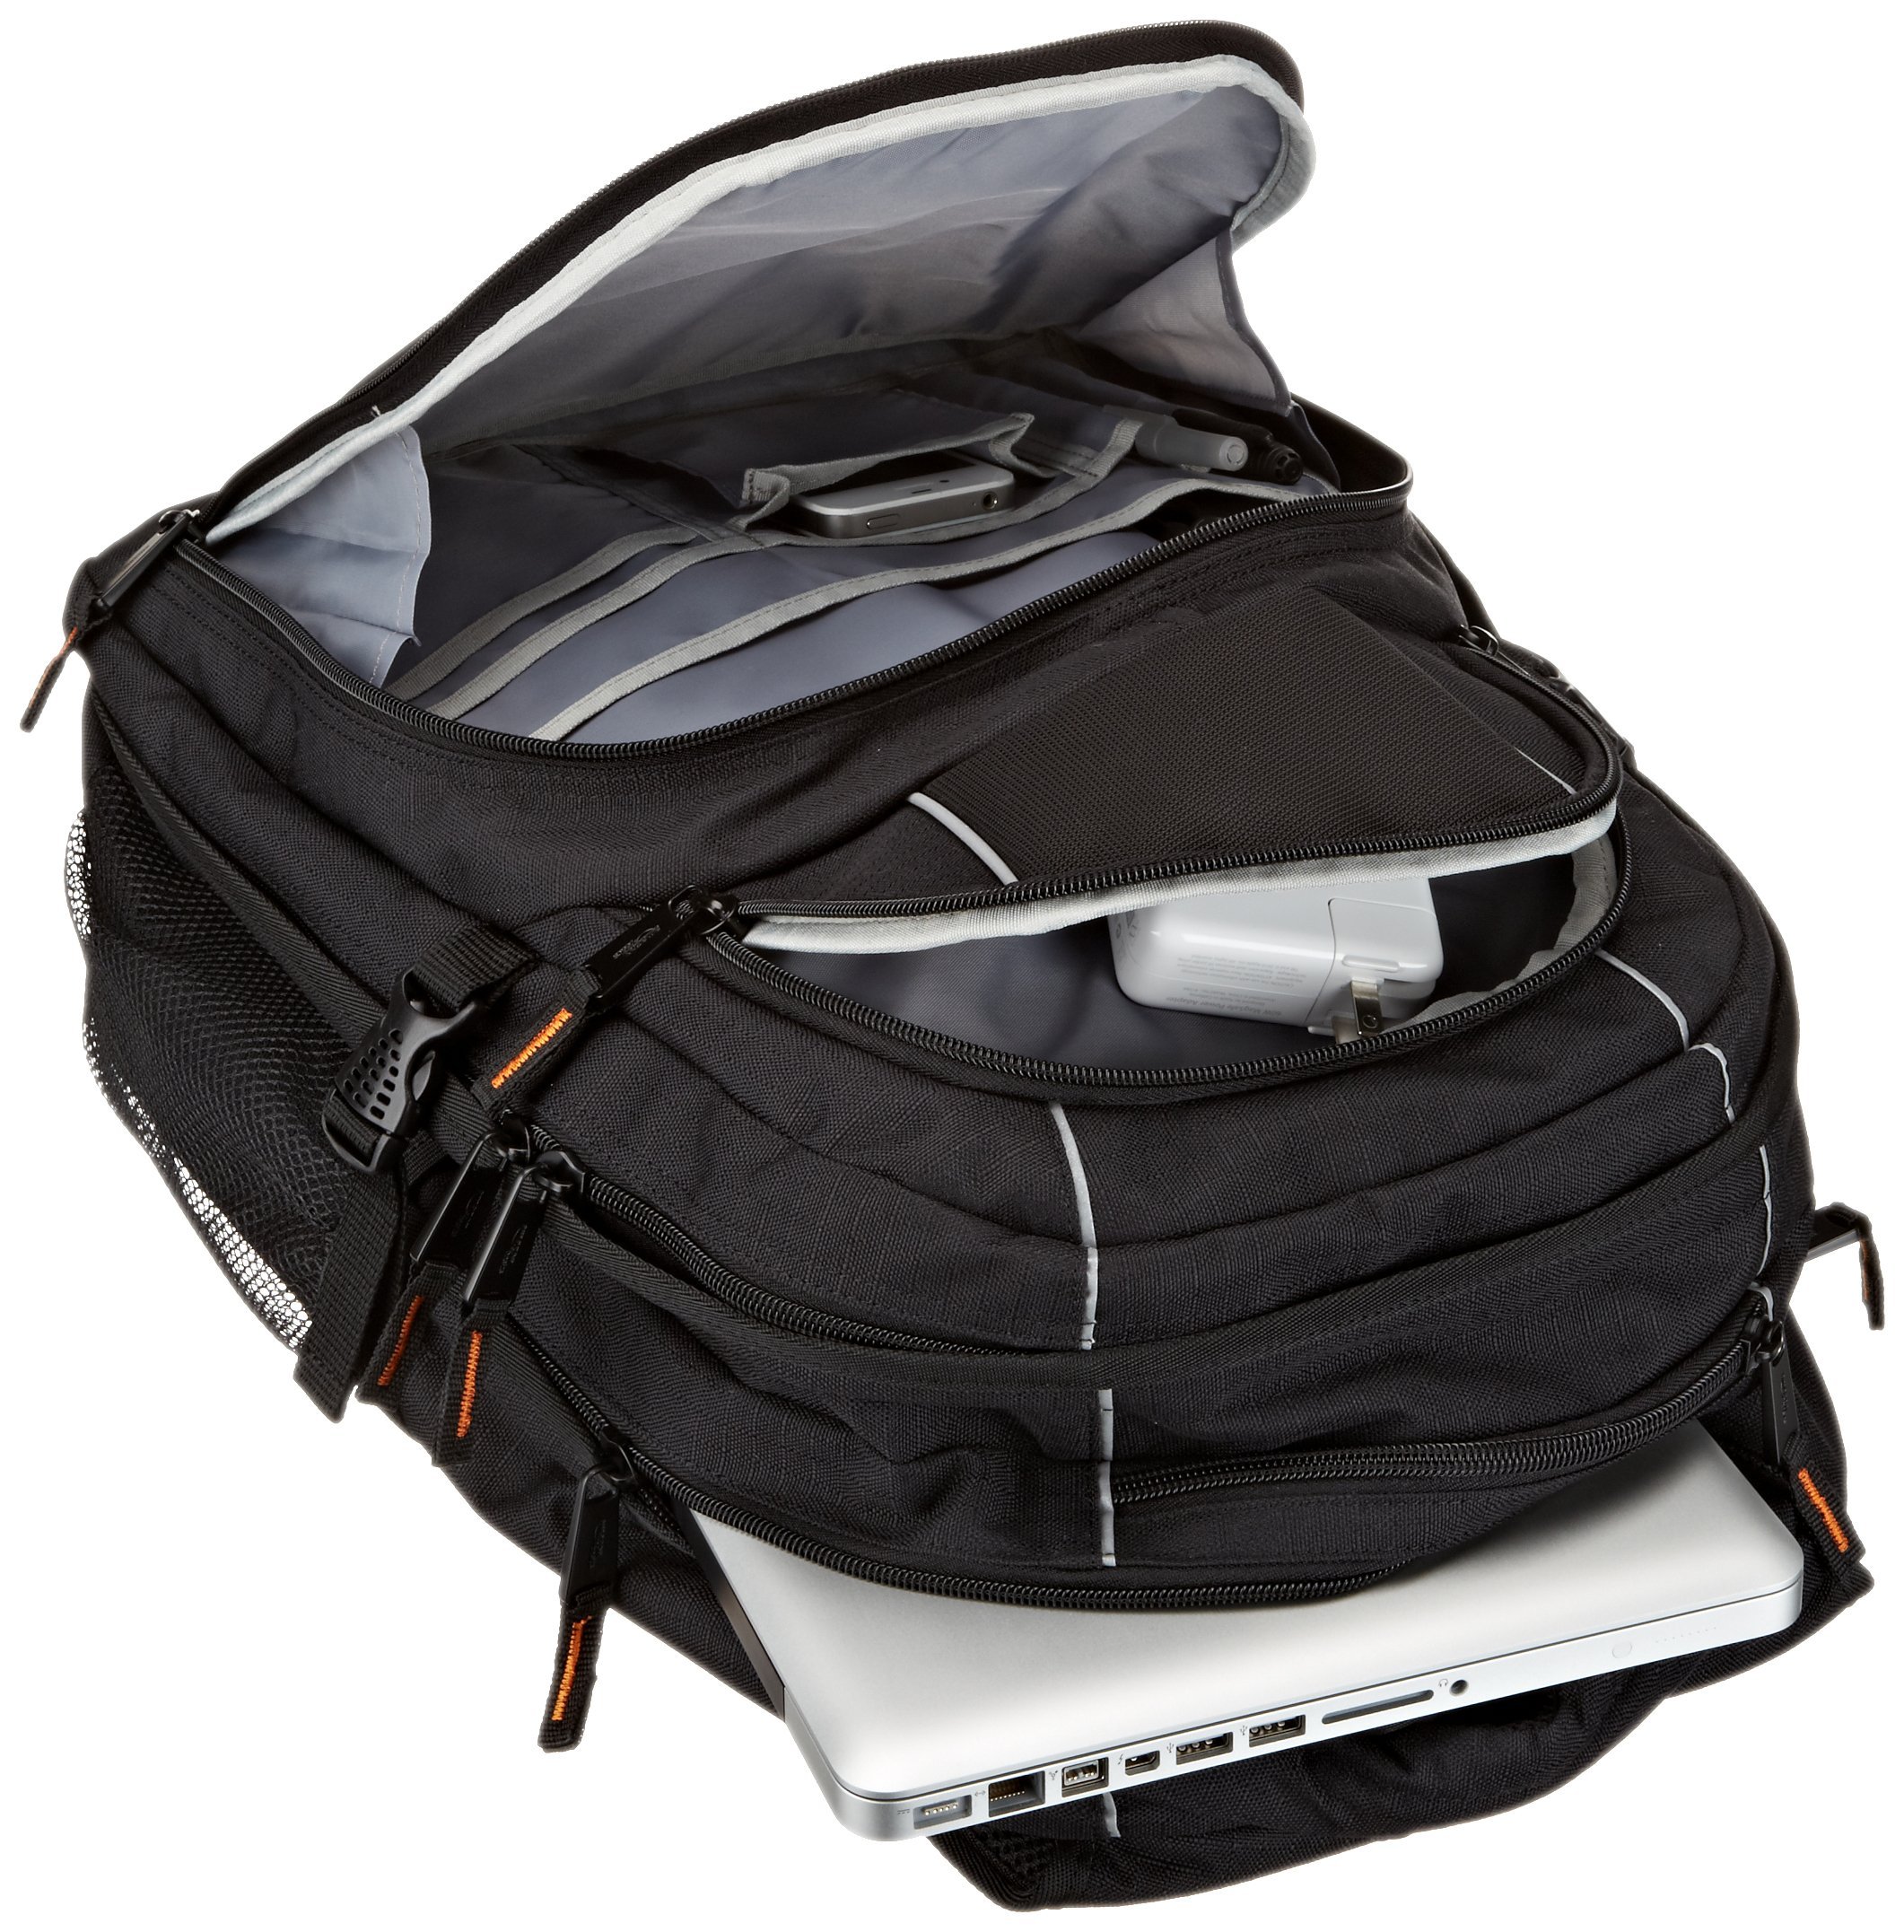 Amazon Basics Laptop Backpack Fits Up to 17-Inch Laptops, Black